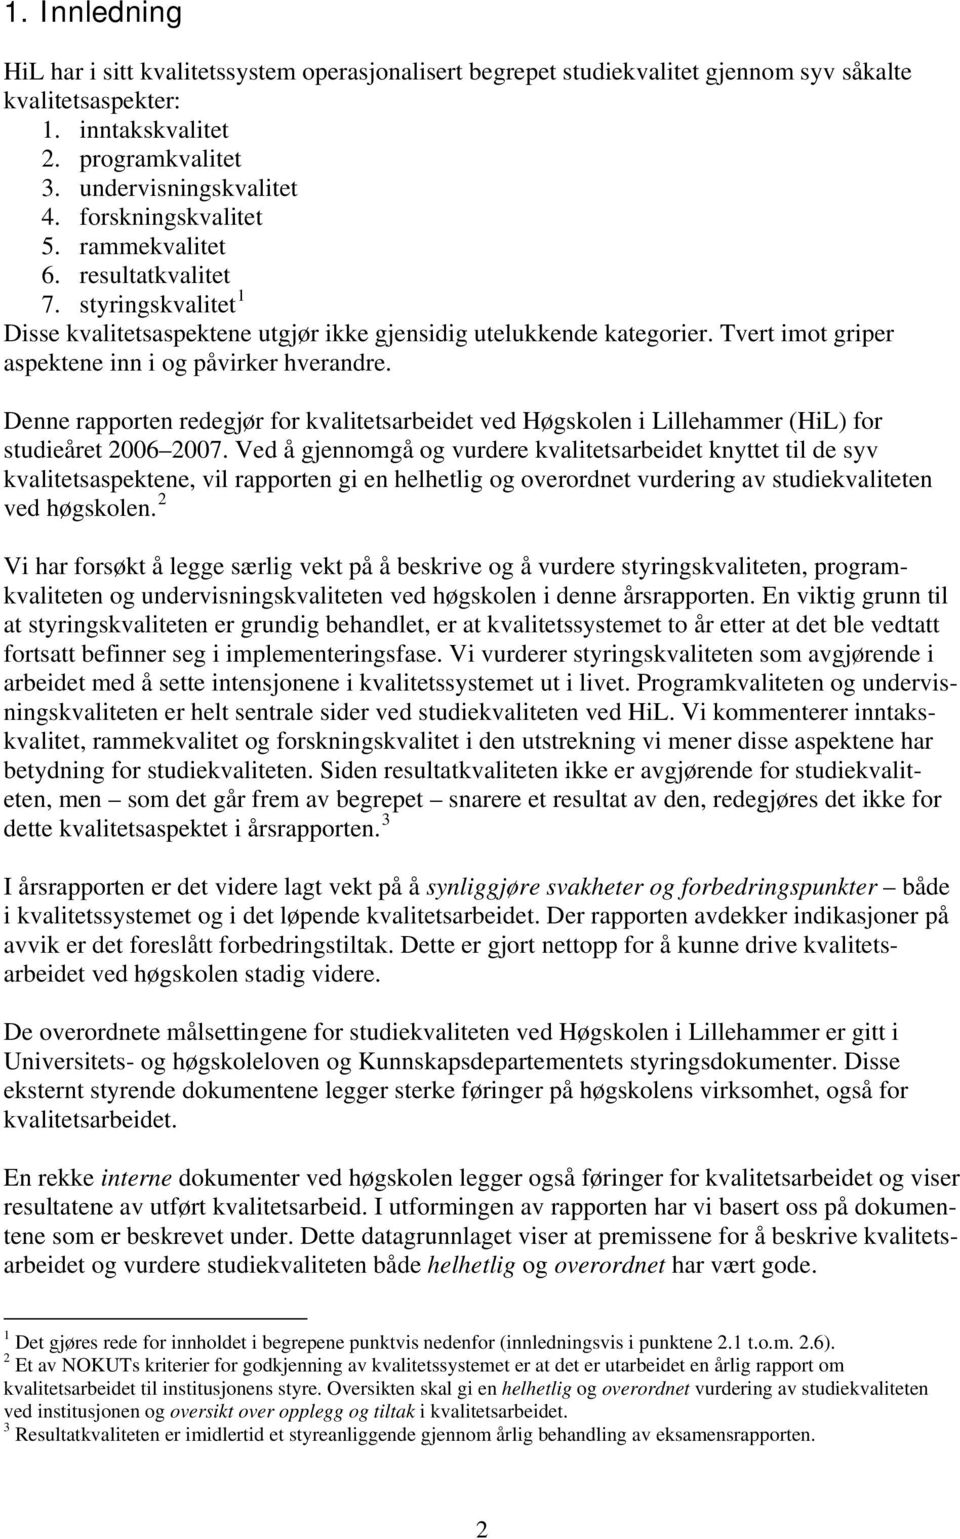 Tvert imot griper aspektene inn i og påvirker hverandre. Denne rapporten redegjør for kvalitetsarbeidet ved Høgskolen i Lillehammer (HiL) for studieåret 2006 2007.